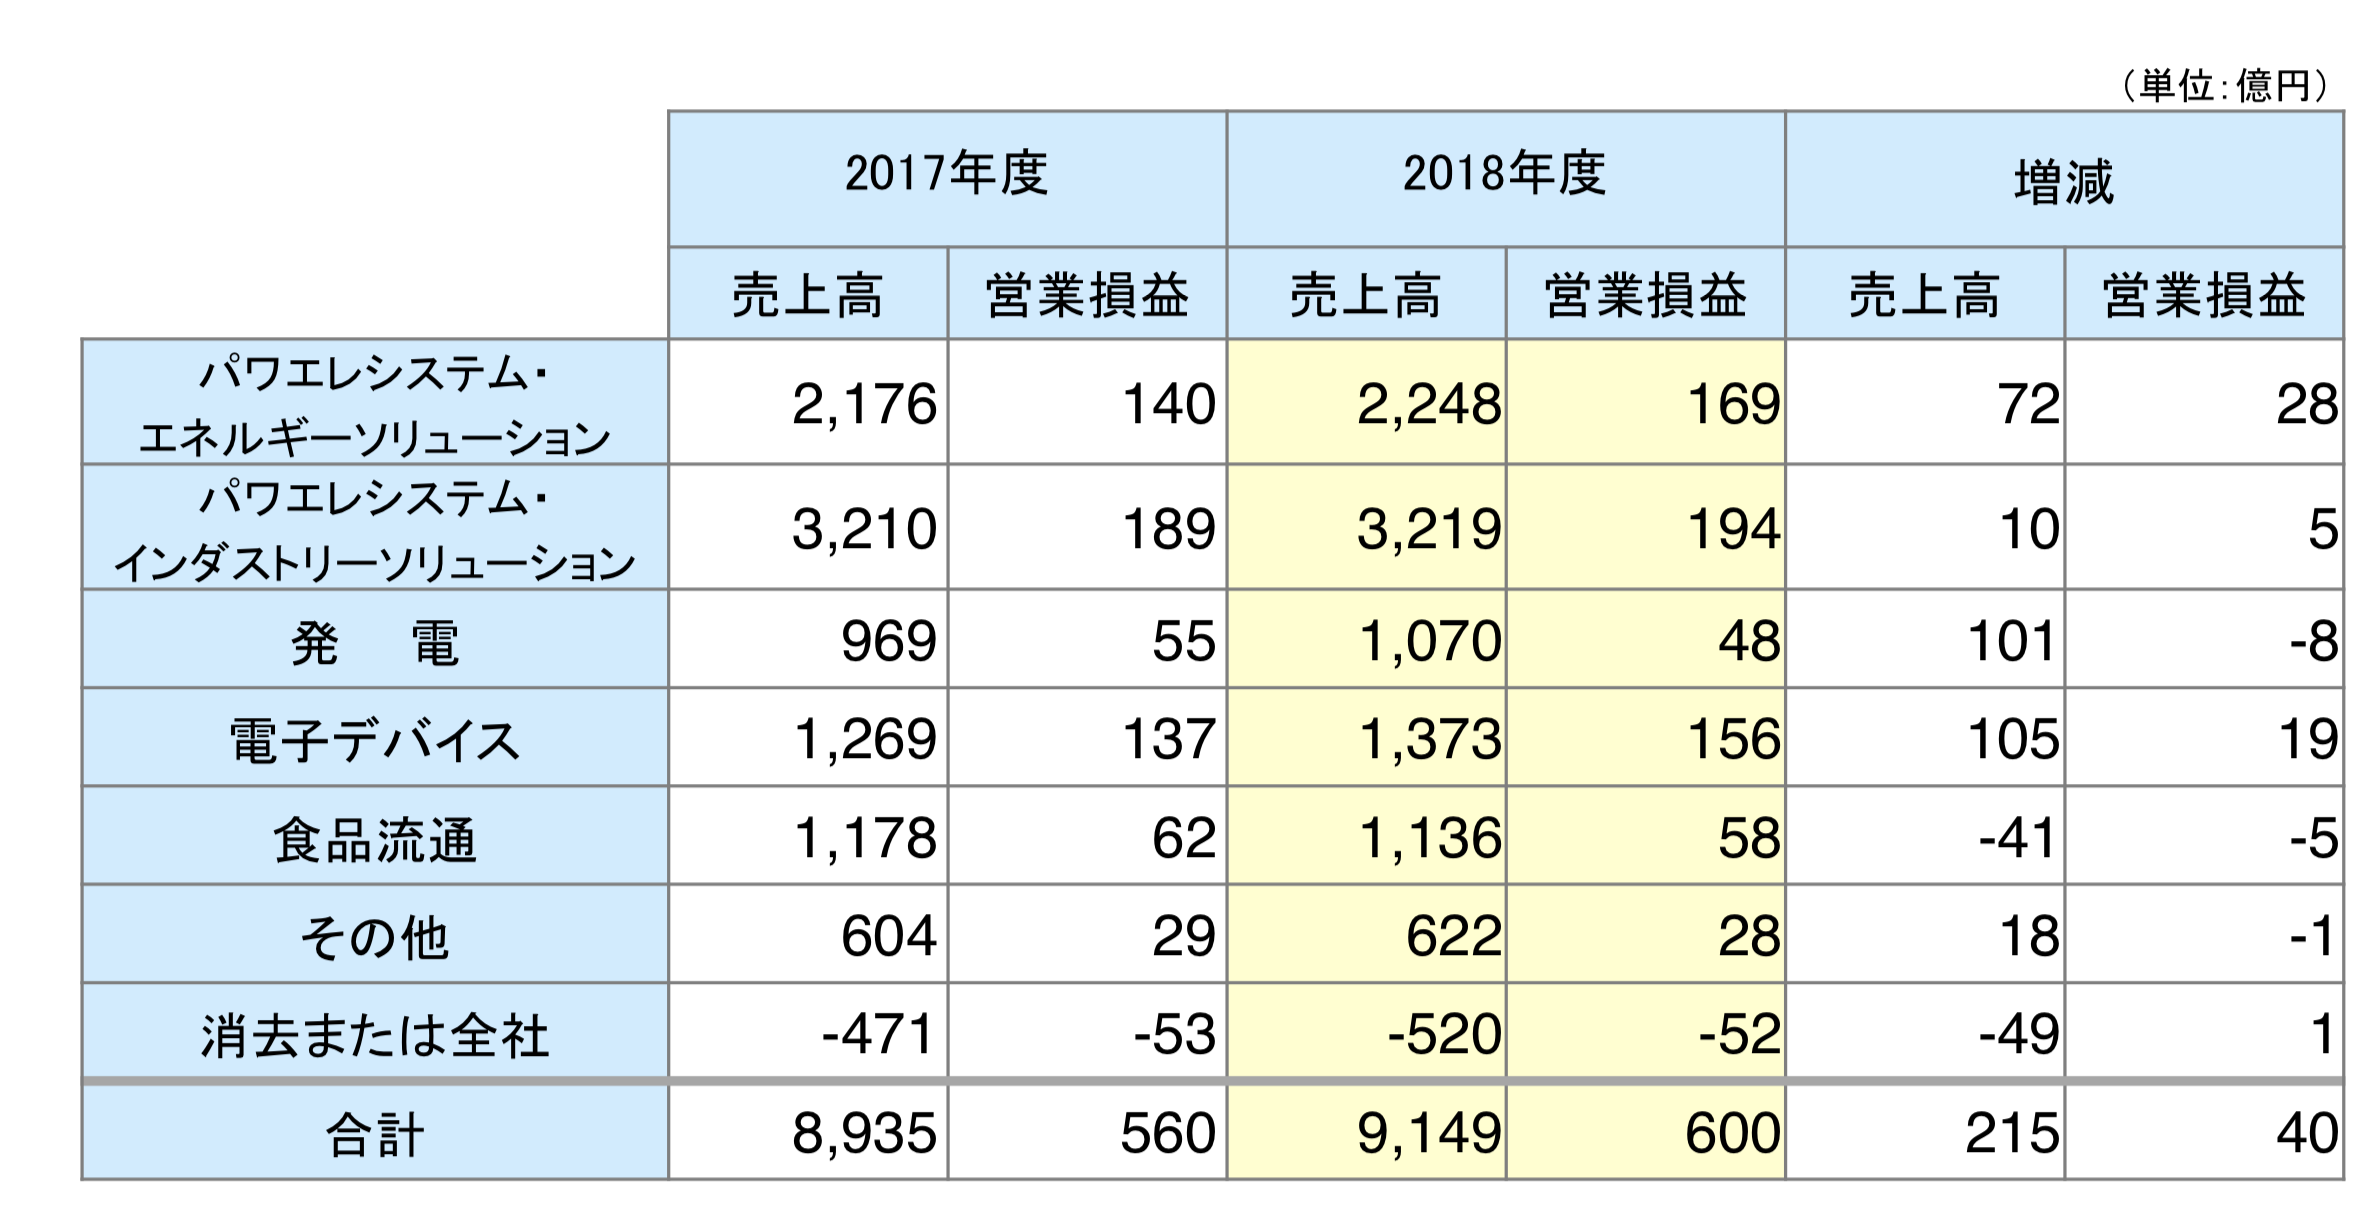 富士電機のセグメント別業績推移